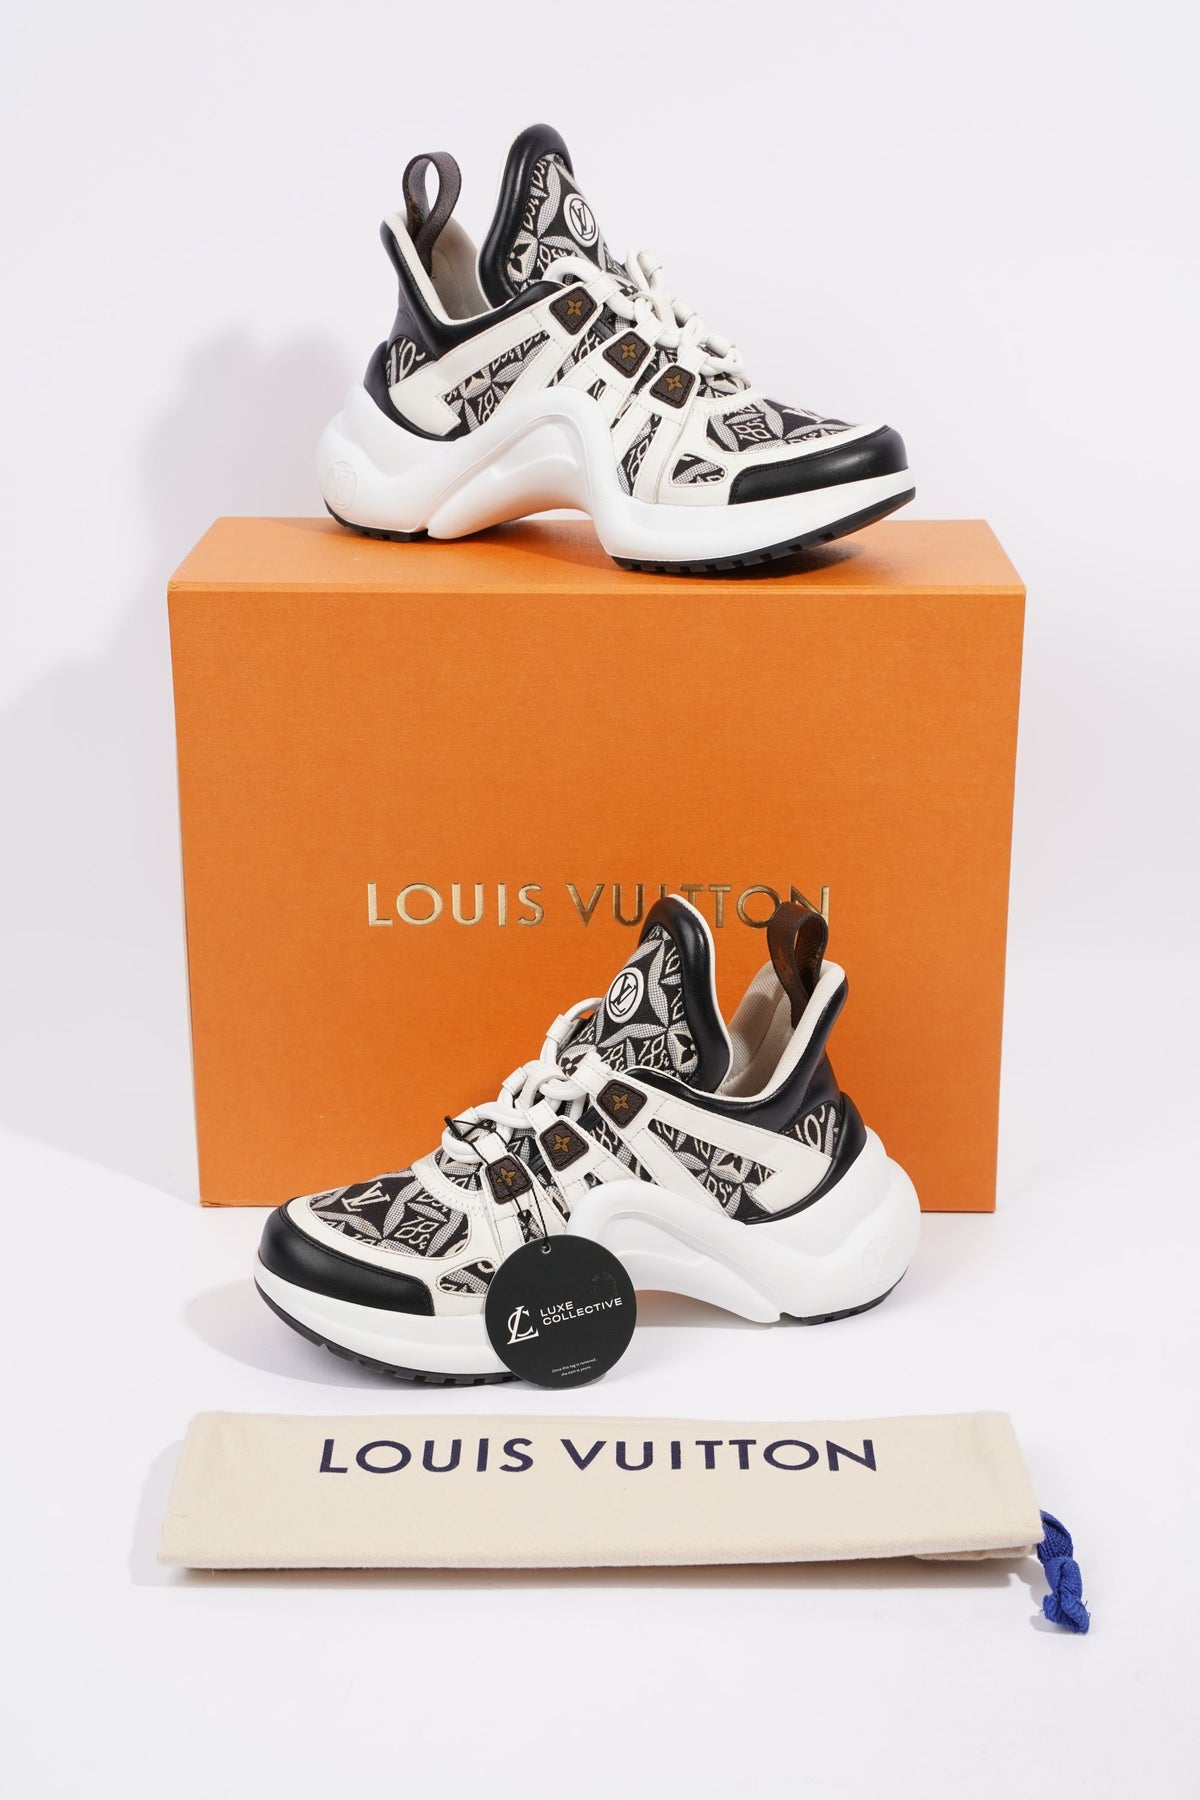 Louis Vuitton Archlight Since 1854